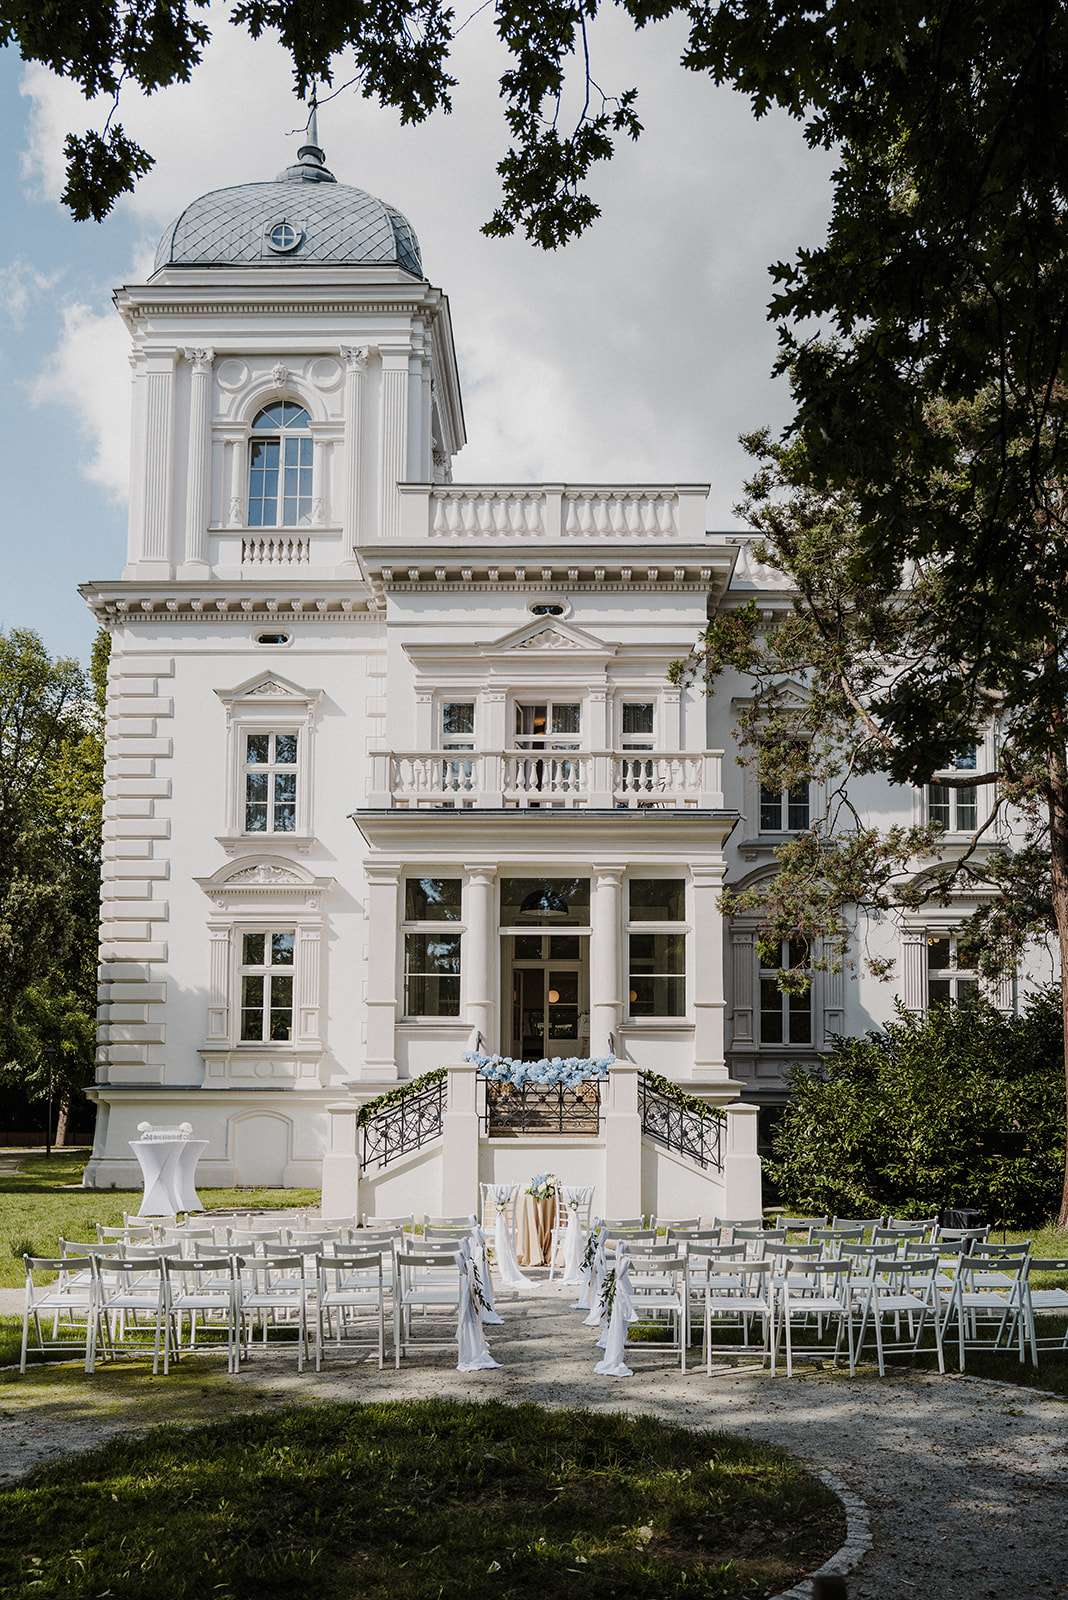 Budynek Starej Biblioteki we Wrocławiu, przygotowany do plenerowego ślubu w ogrodzie.